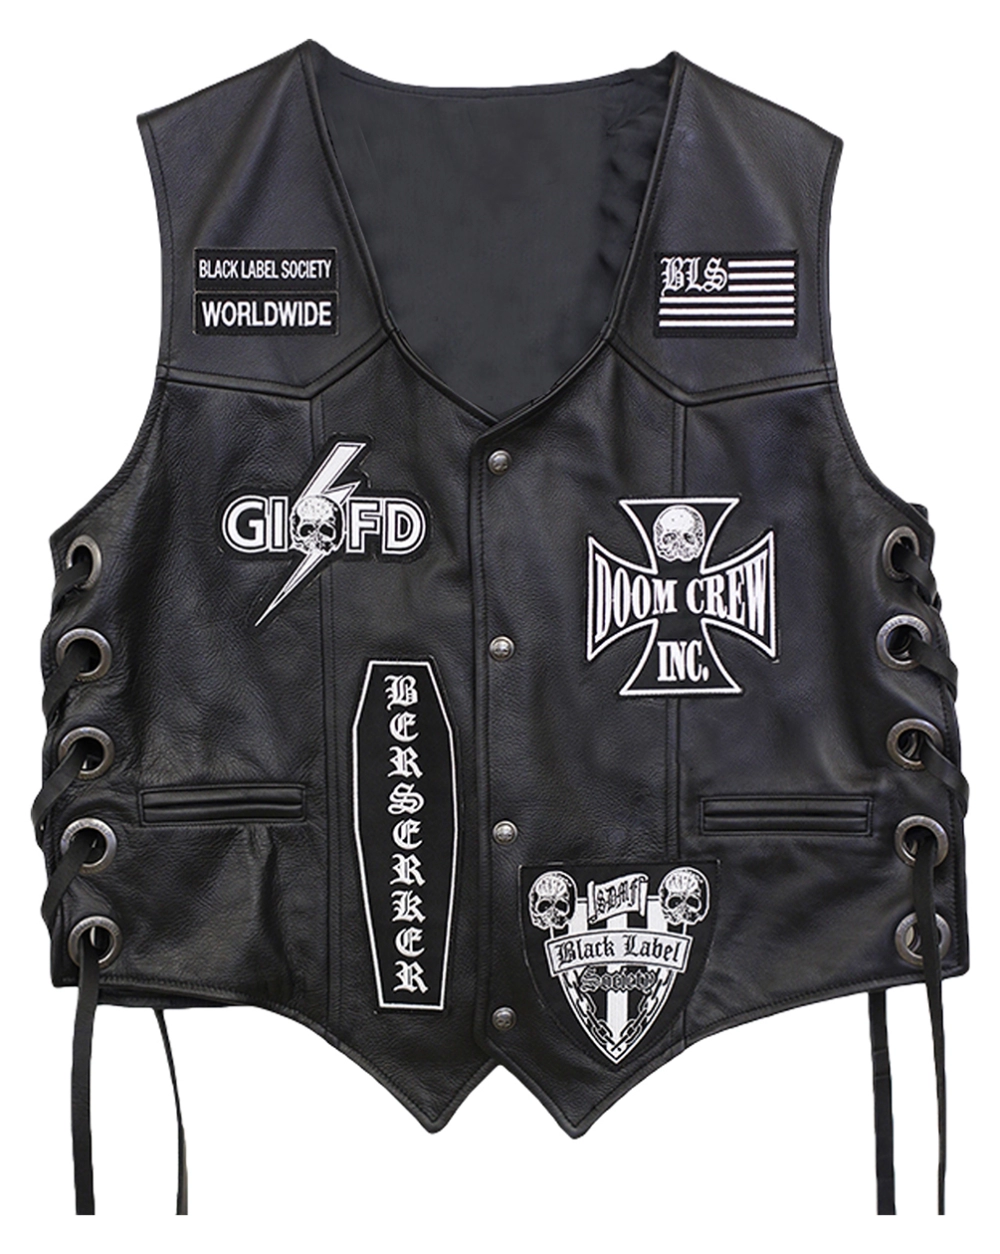 BlackLabel-Society Black Label Society Vest